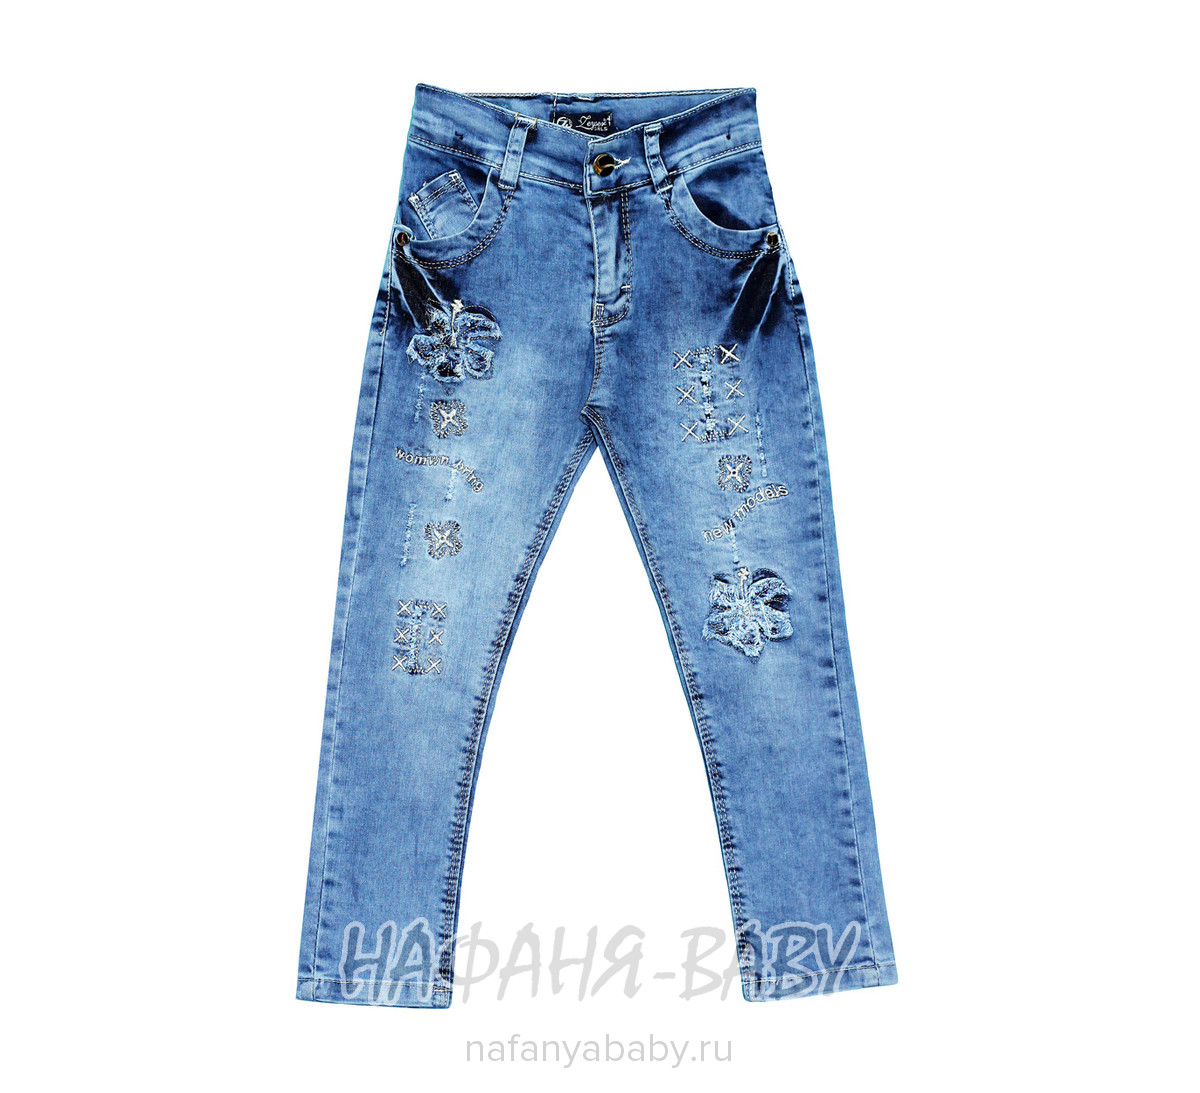 Детские джинсы ZEISER арт: 30701, 5-9 лет, 10-15 лет, цвет синий, оптом Турция